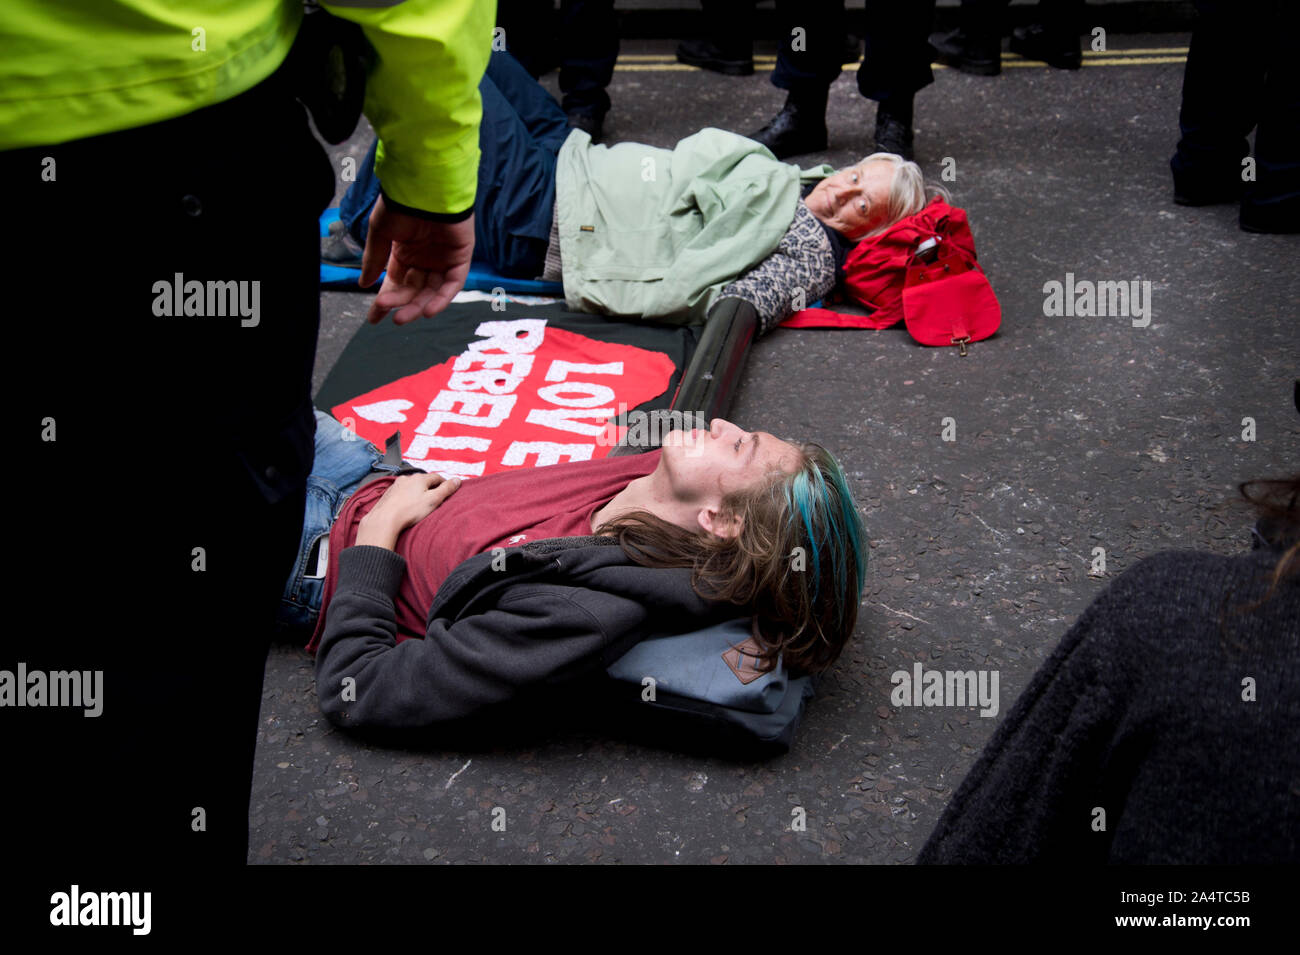 Extinction de la rébellion, Londres, 10 octobre 2019. Trafalgar Square. Verrouillé sur-militants. Banque D'Images